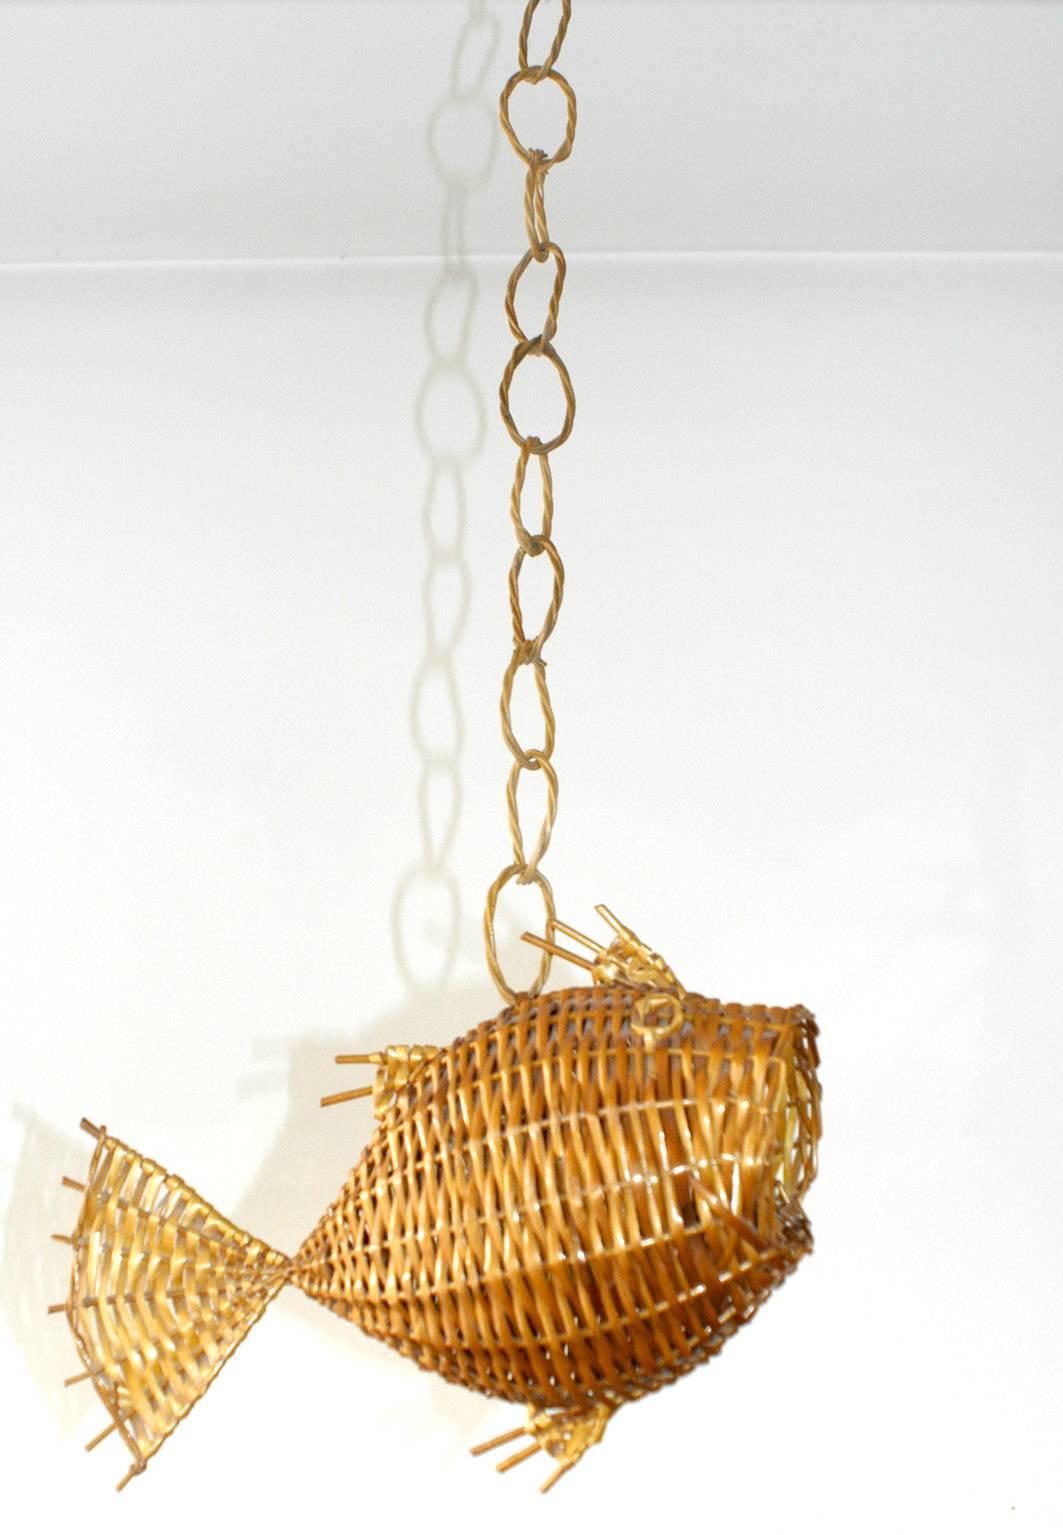 fish shaped wicker basket